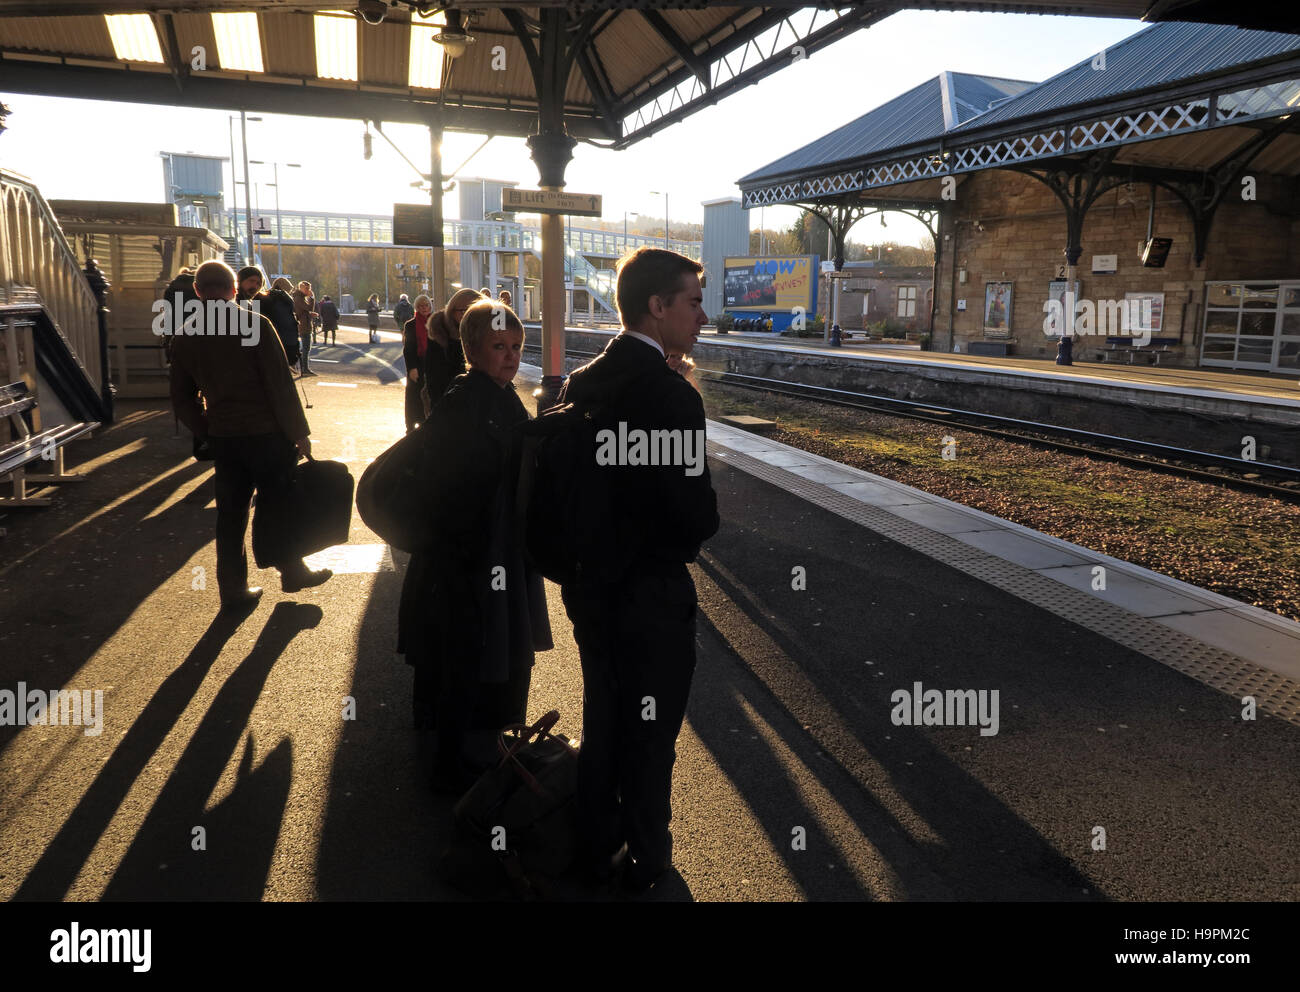 Les passagers casting shadows sur une plate-forme ferroviaire, Perth, Ecosse, Royaume-Uni Banque D'Images